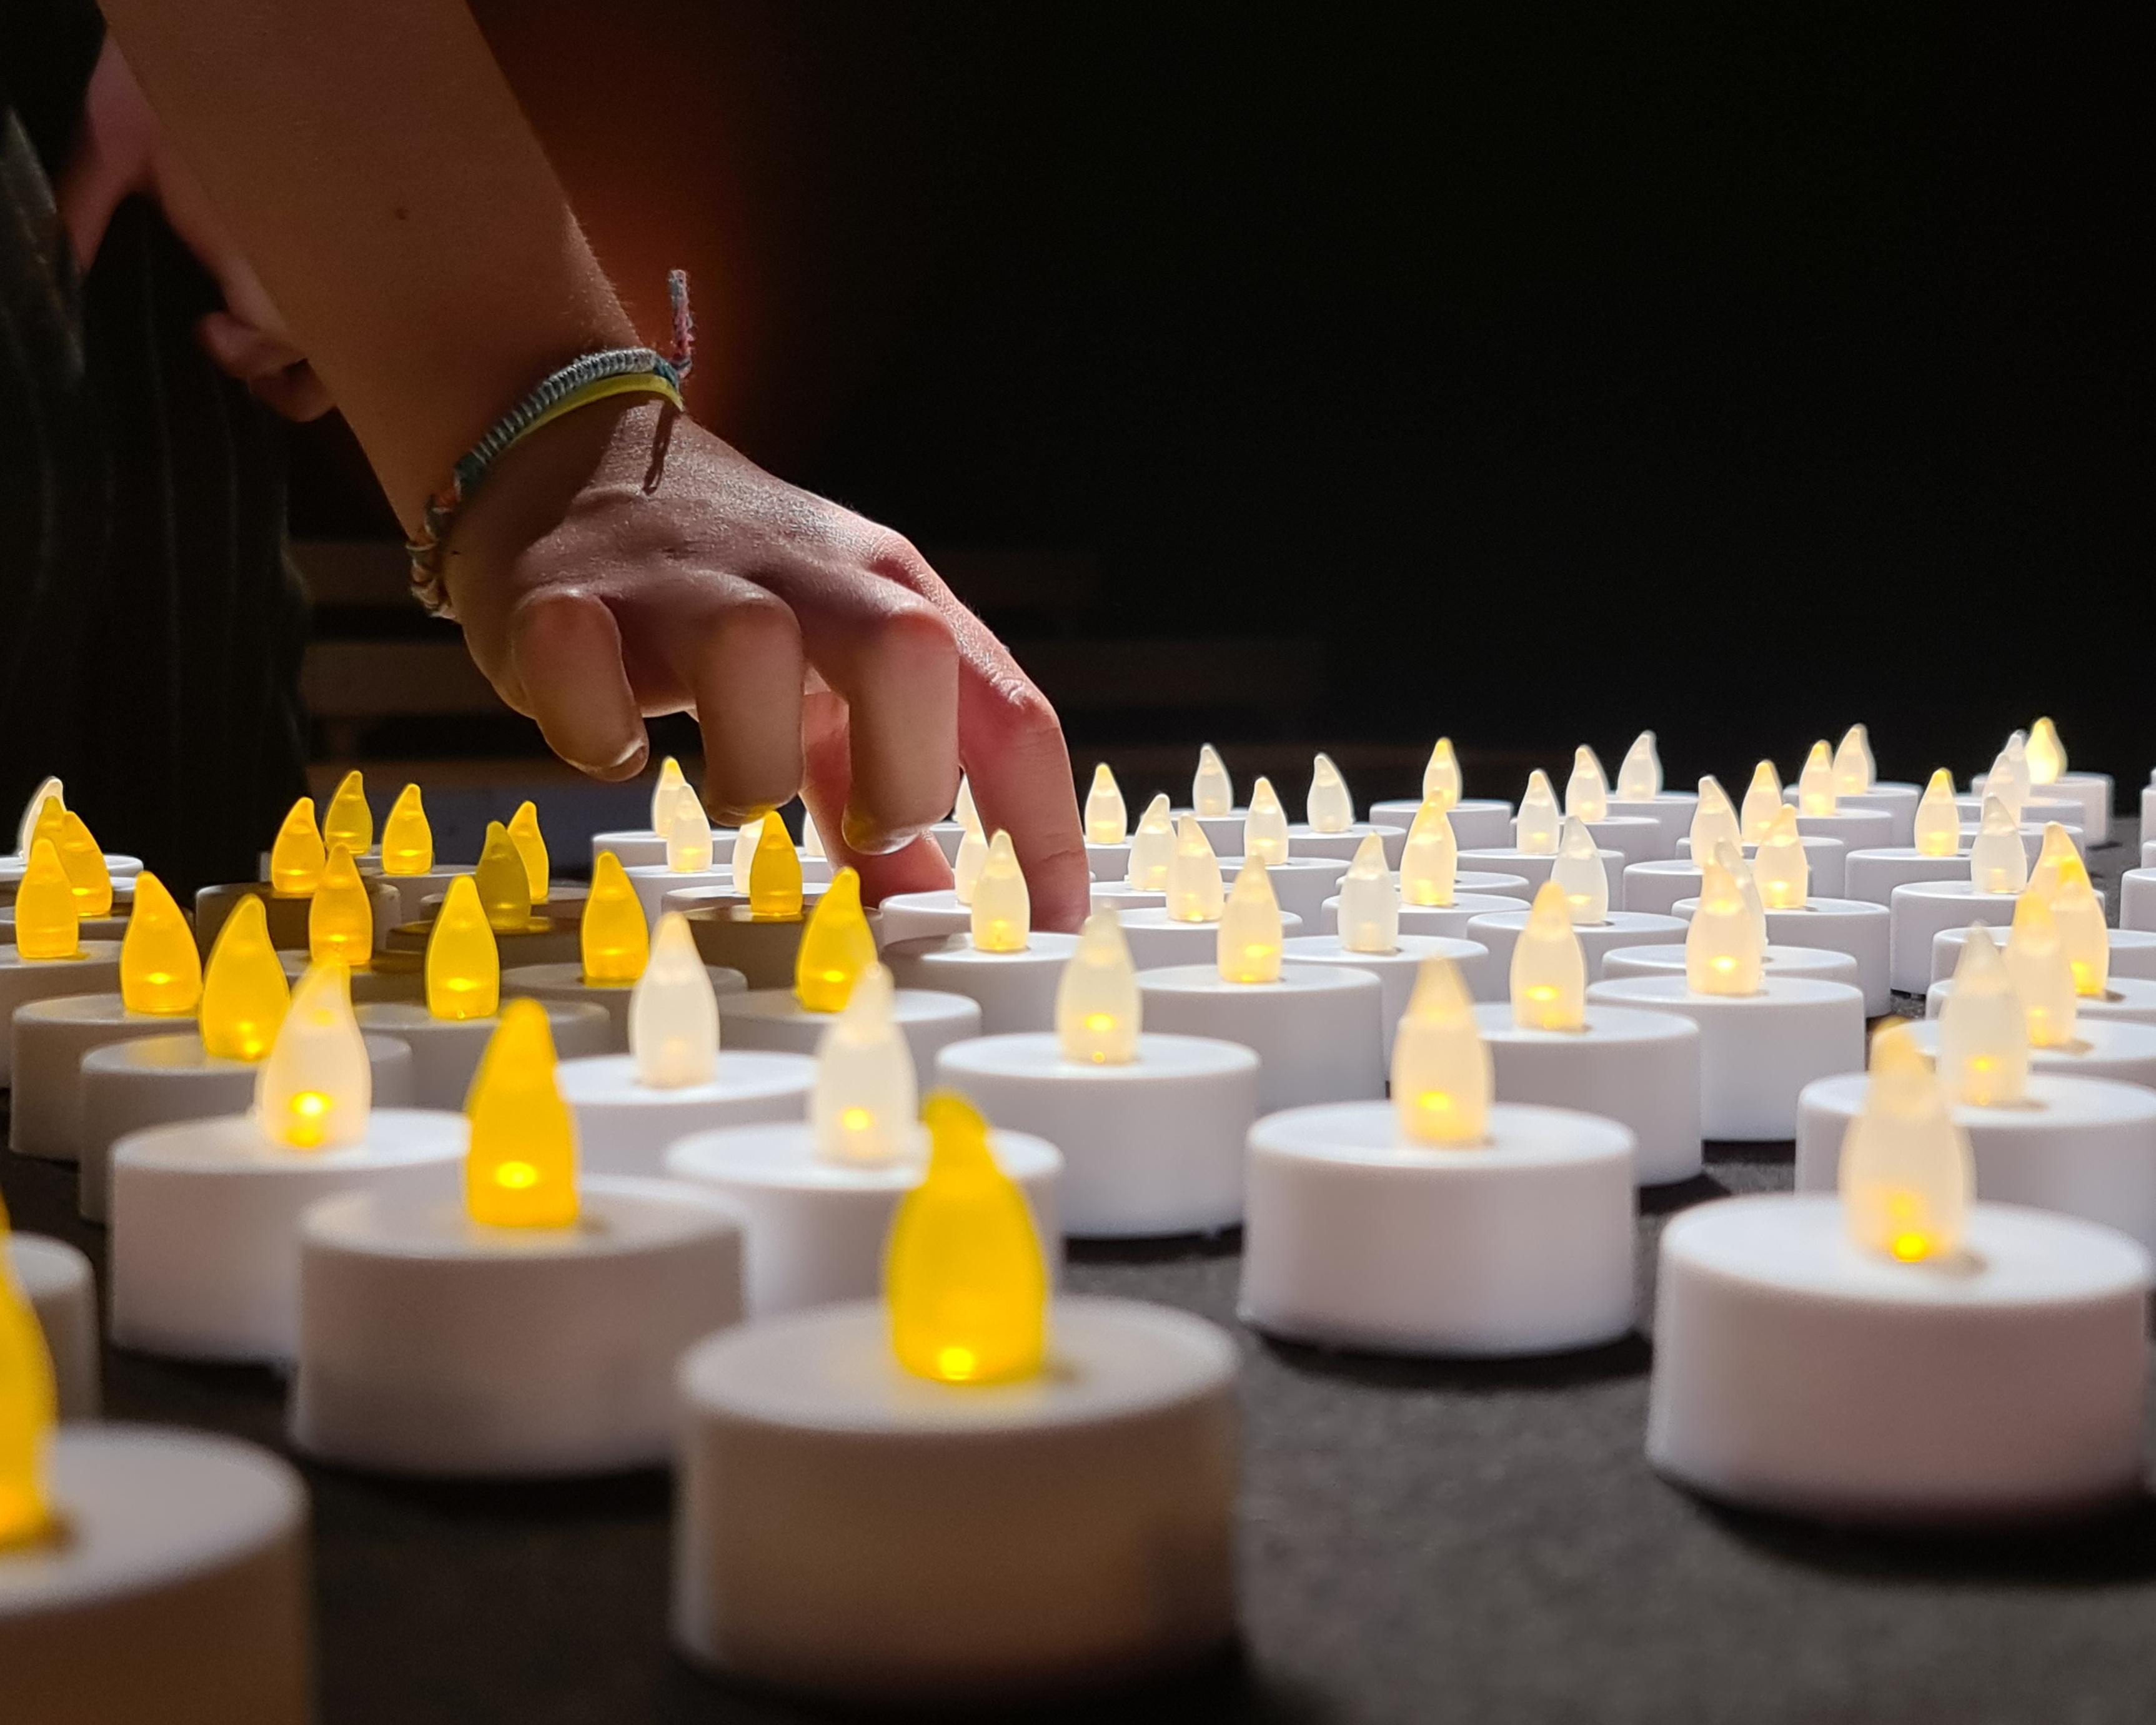 253 petites bougies ont été allumées à la mémoire des 253 personnes décédées dans le canton de Neuchâtel lors du semi-confinement. [DR - Katja Bitsch]